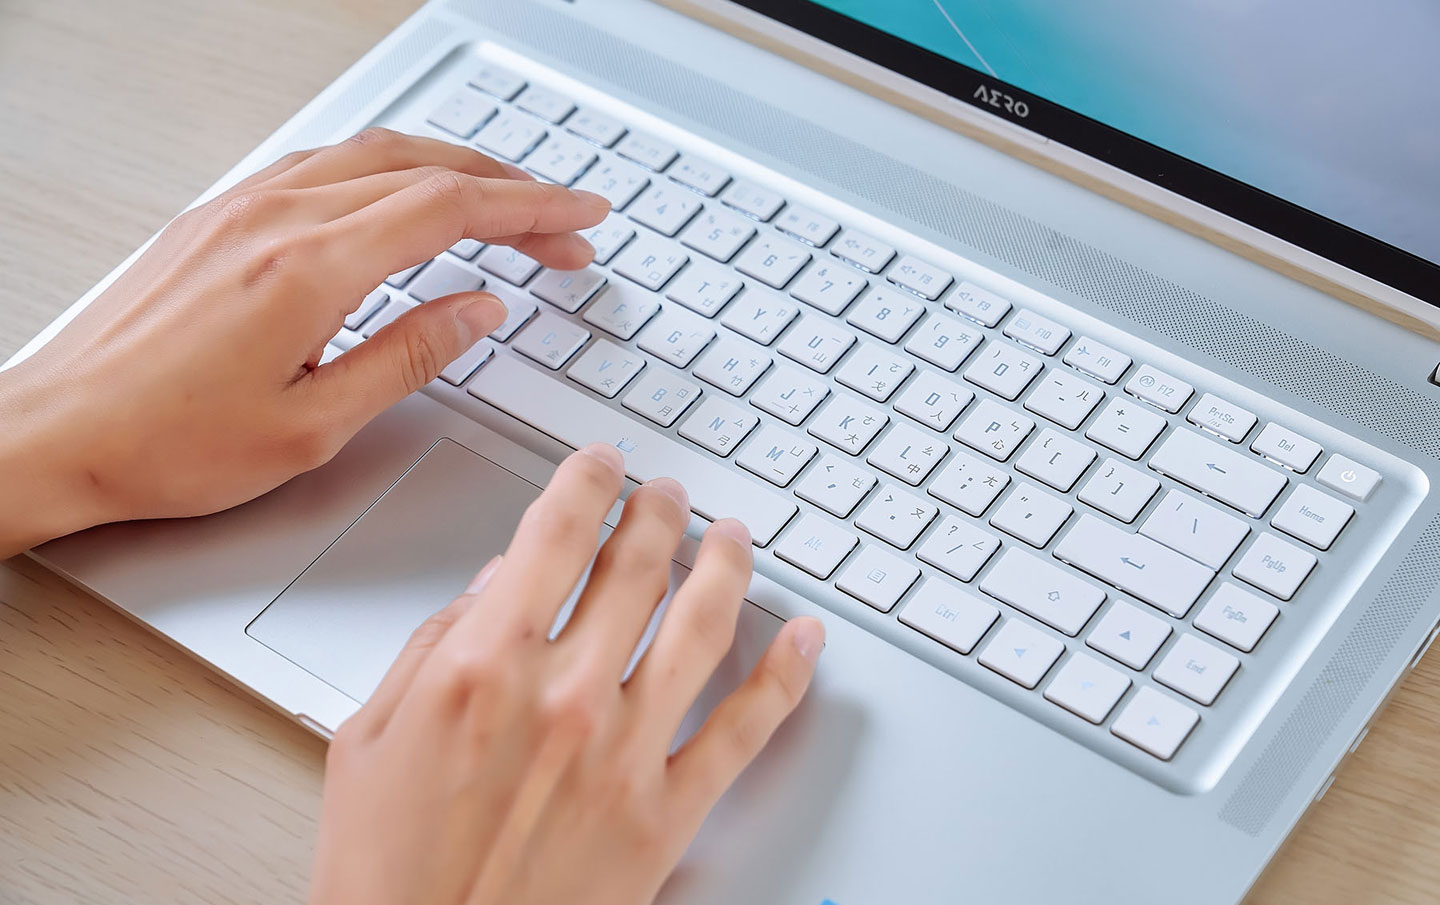 AERO 16 OLED 的鍵盤擁有 1.7 mm 的長鍵程，打字時的回饋感合宜，使用起來非常舒適。